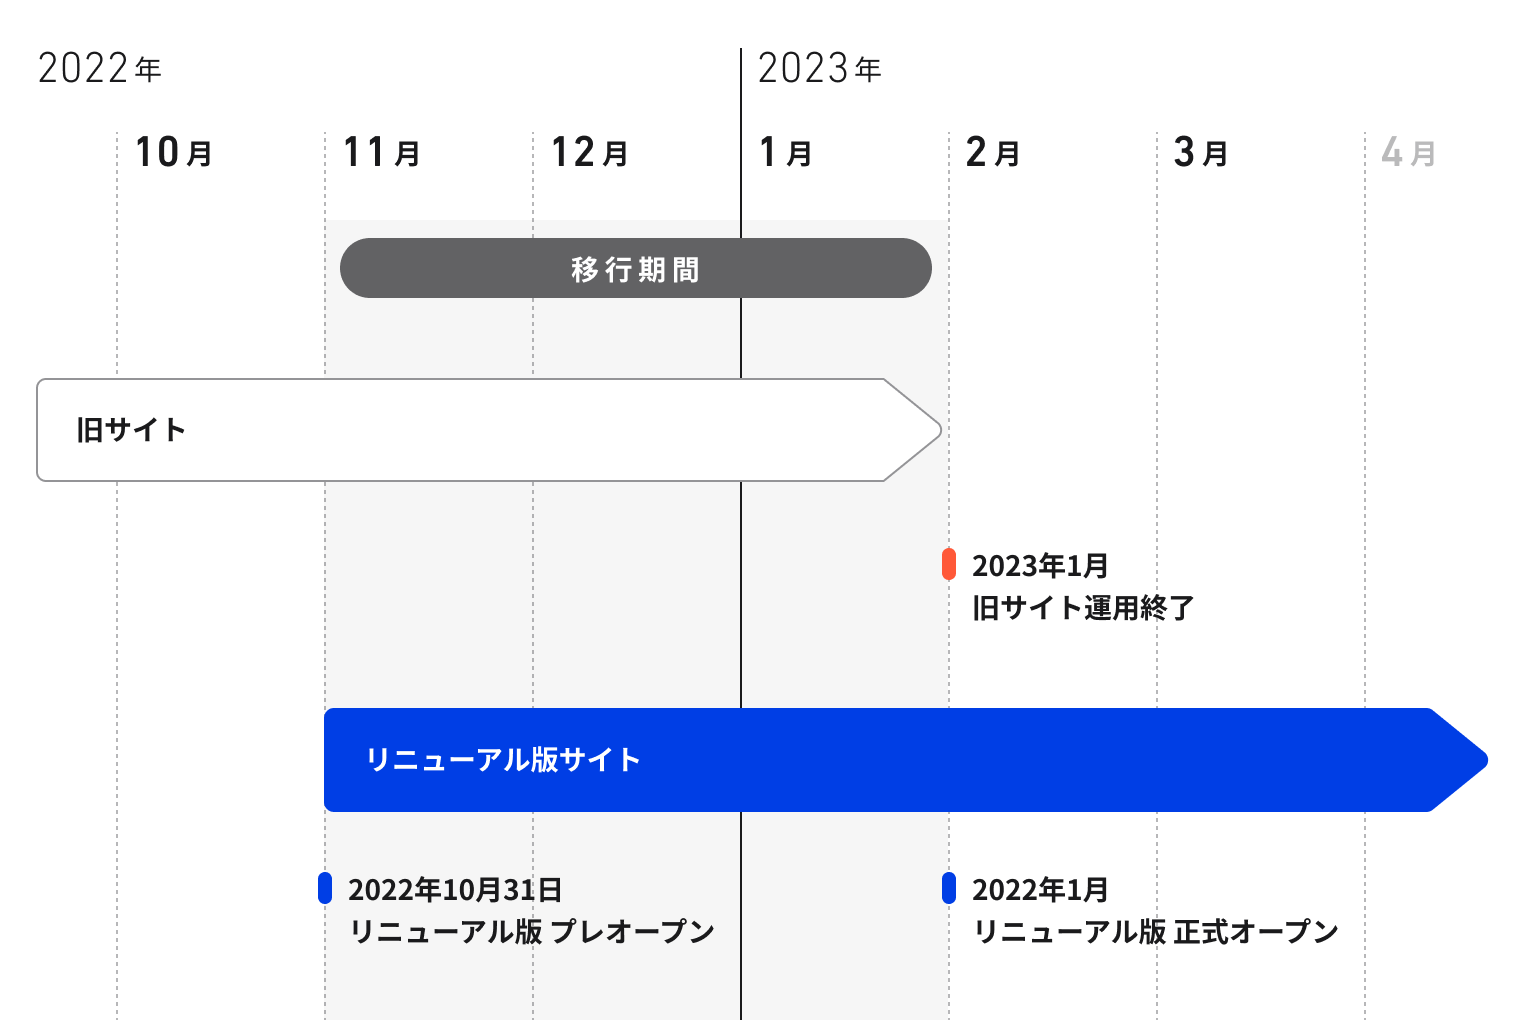 サイトリニューアル完了までのスケジュール表。2022年10月から2023年4月までのスケジュールが示されている